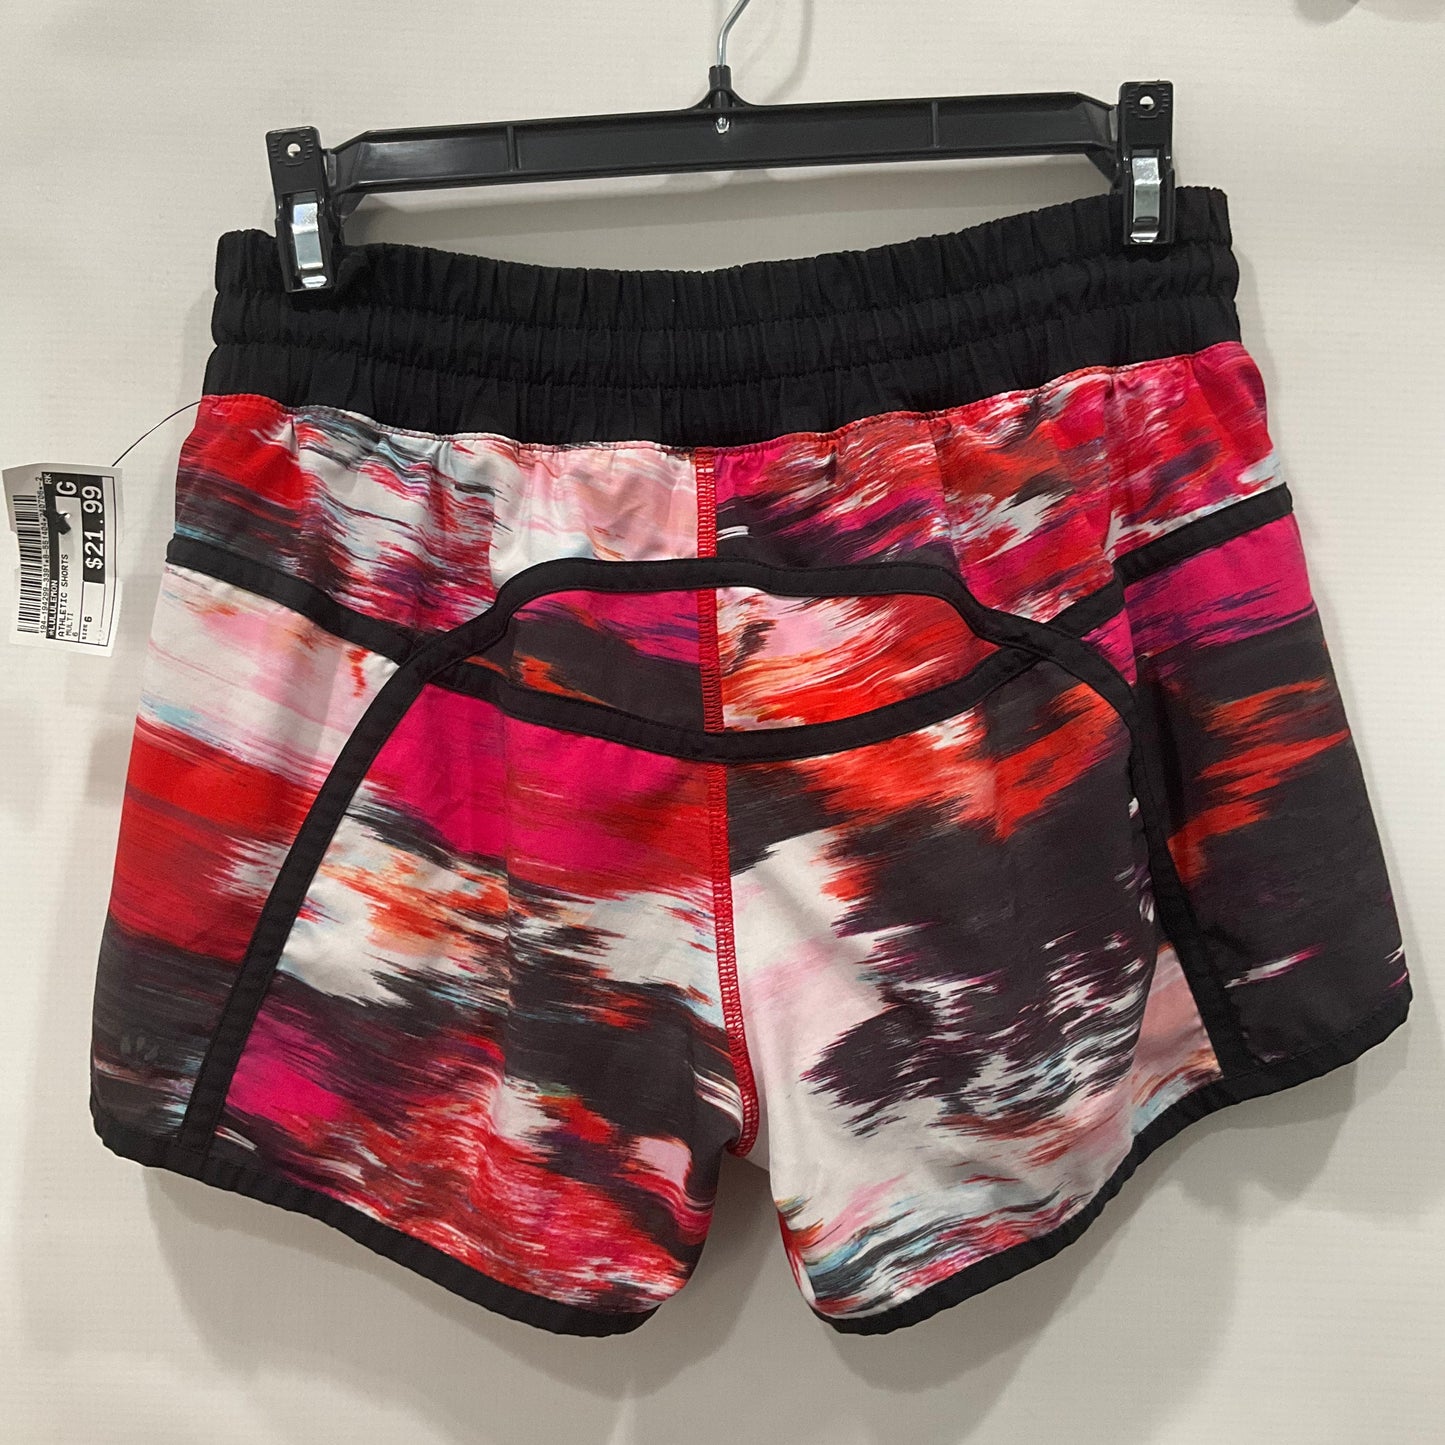 Multi-colored Athletic Shorts Lululemon, Size 6